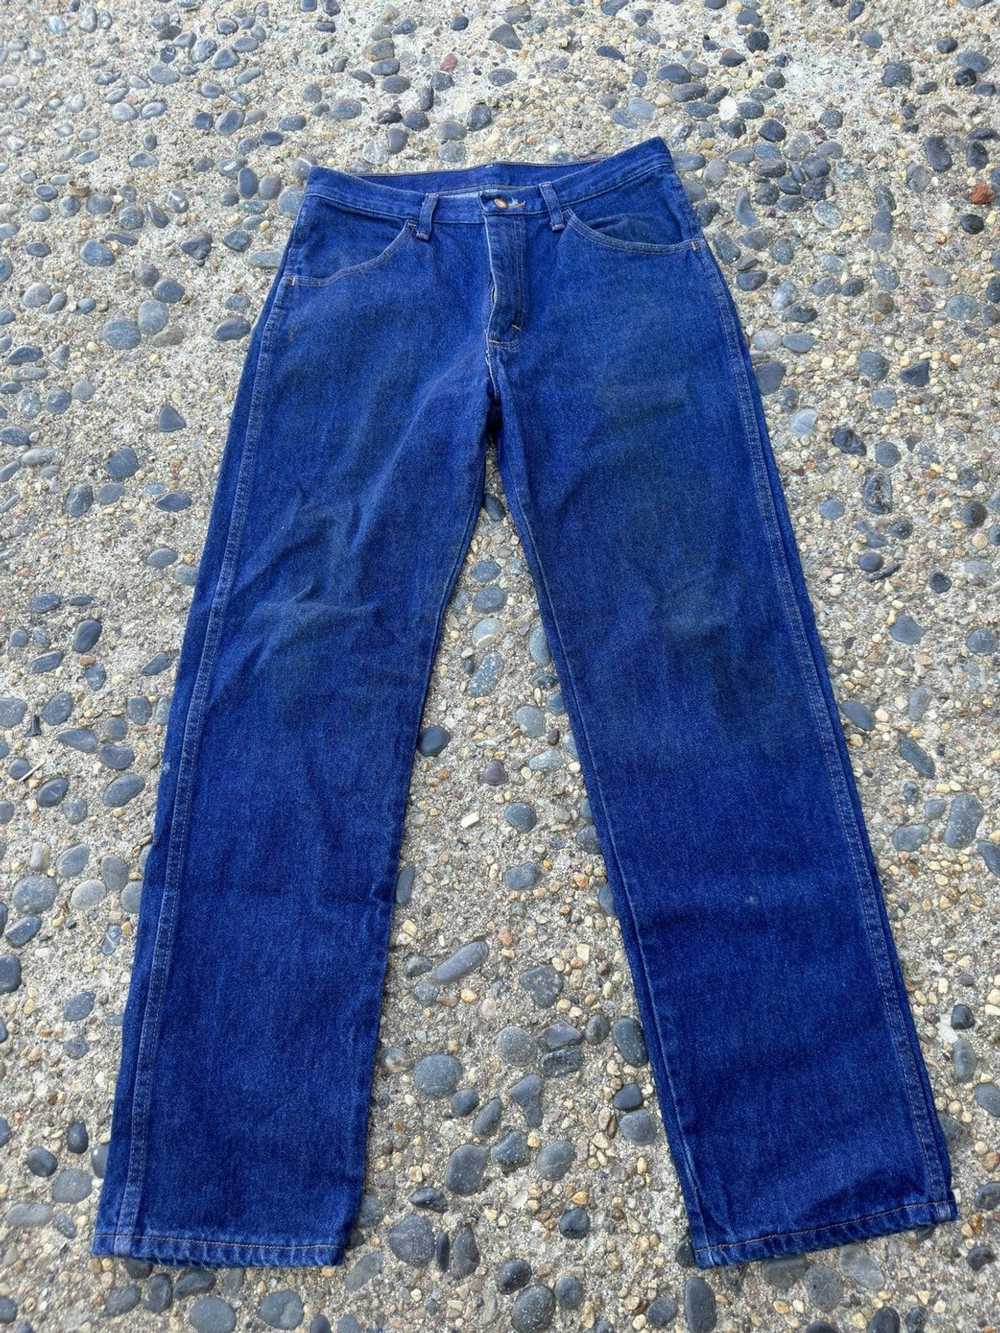 Rustler × Vintage Vintage Rustler Jeans Size 31x30 - image 1